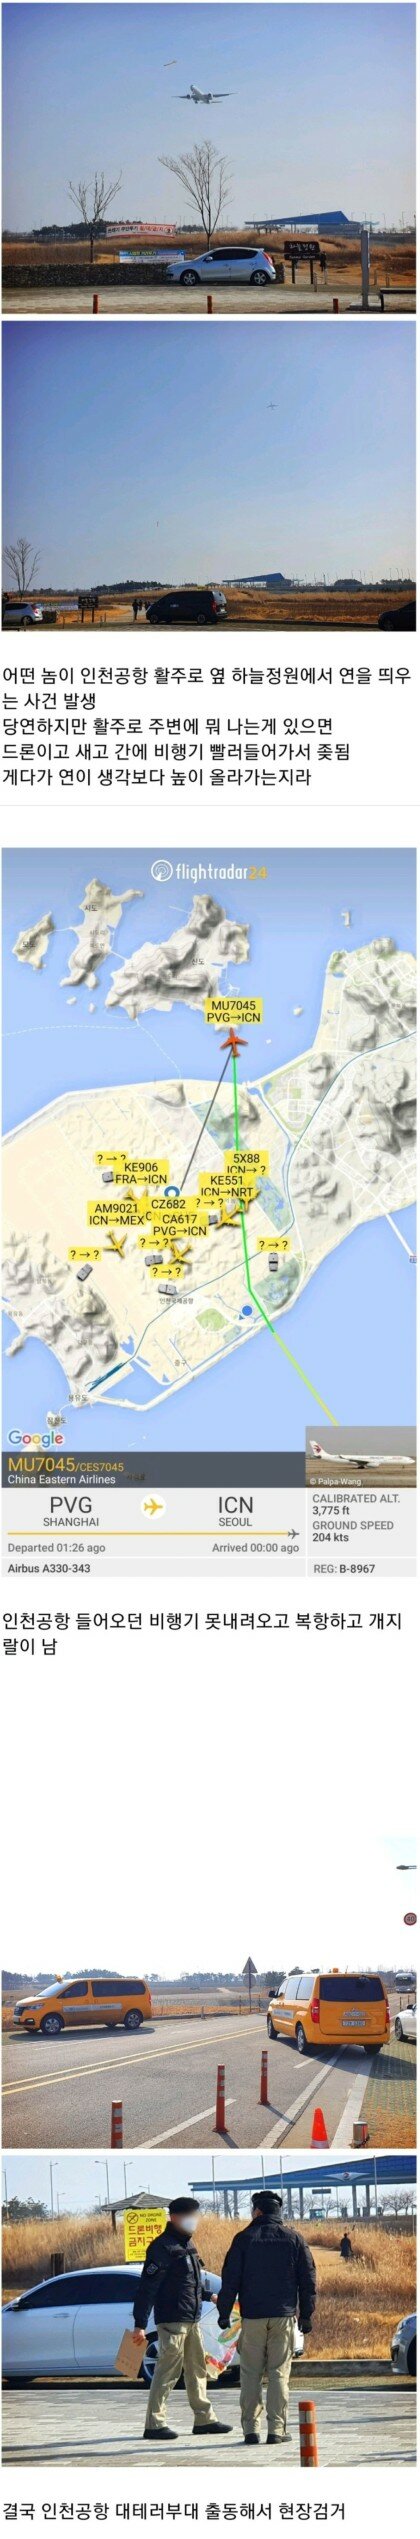 인천공항 근처에서 연 날린 사람